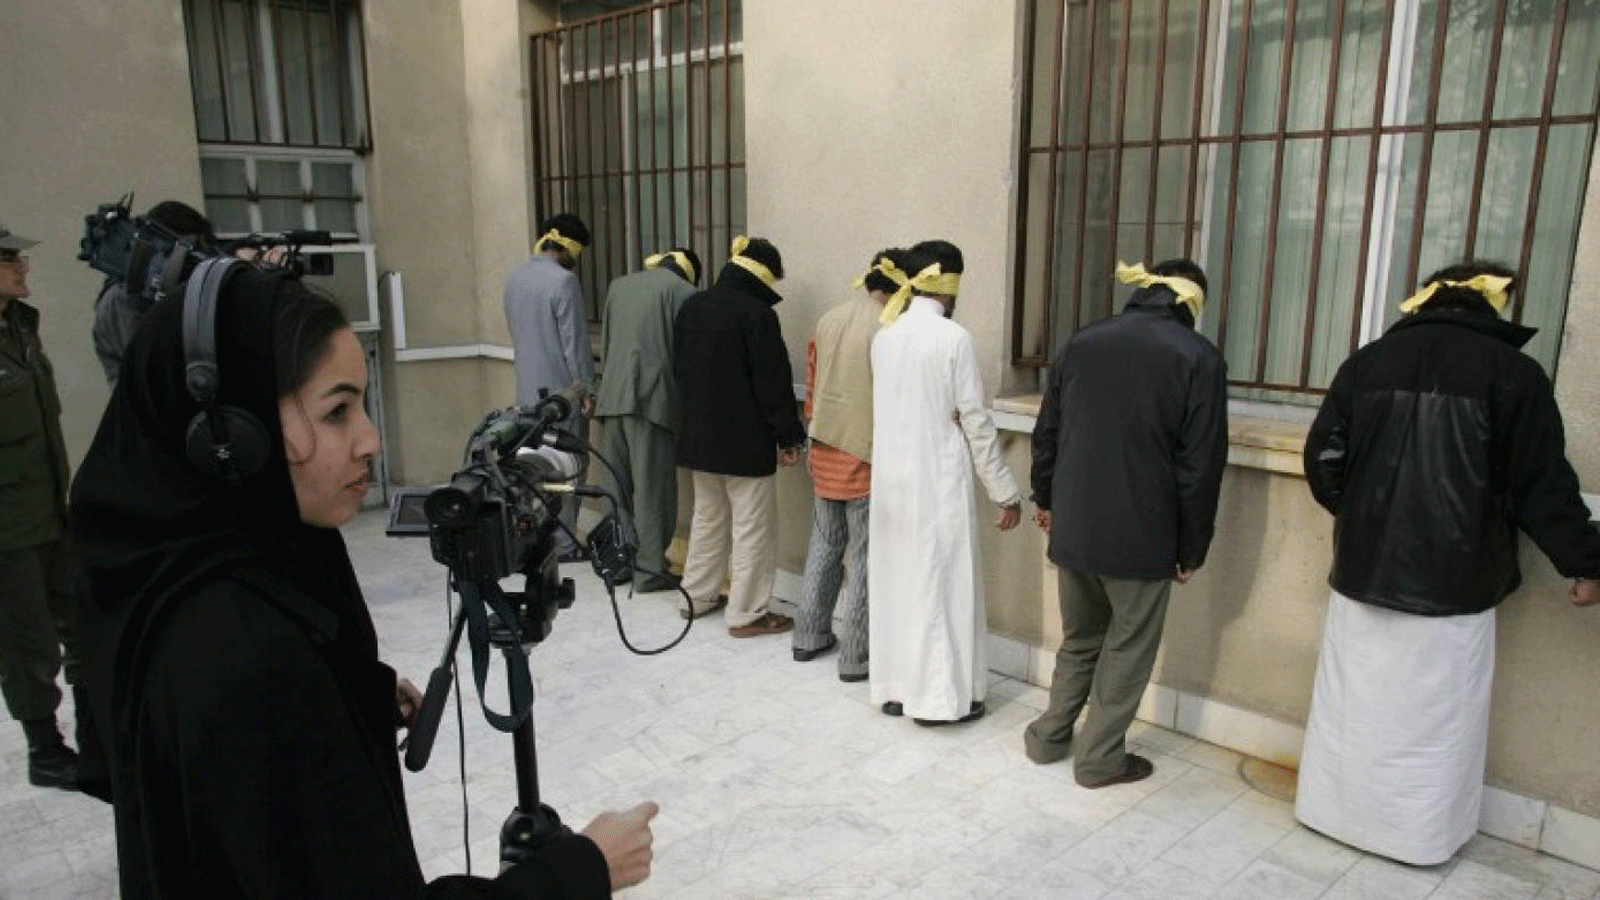 صف من المتهمين بتهريب المخدرات في مركز للشرطة في إيران